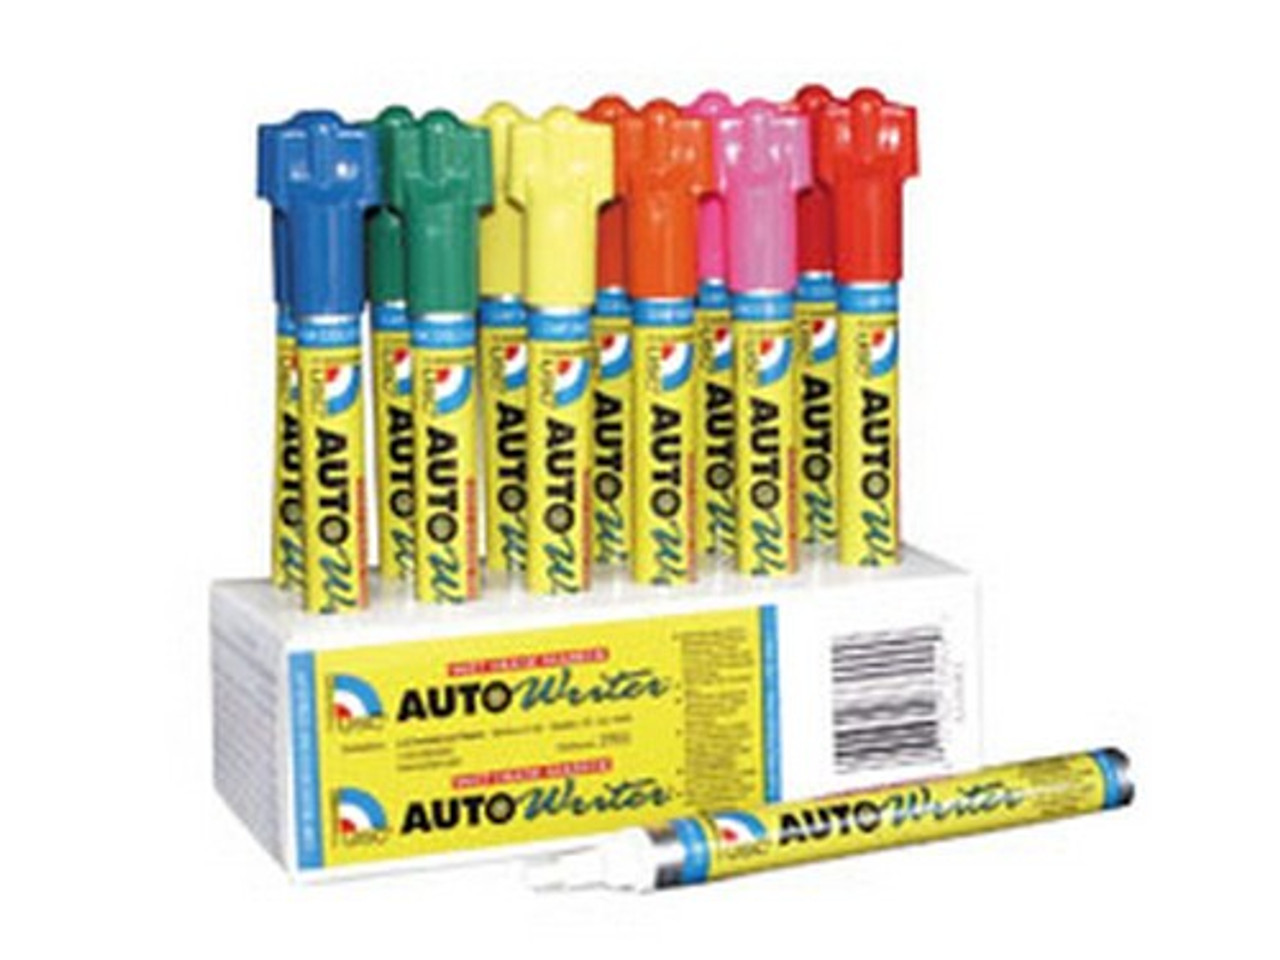 Penna per scrittura automatica US Chemical & Plastics 37008, rossa